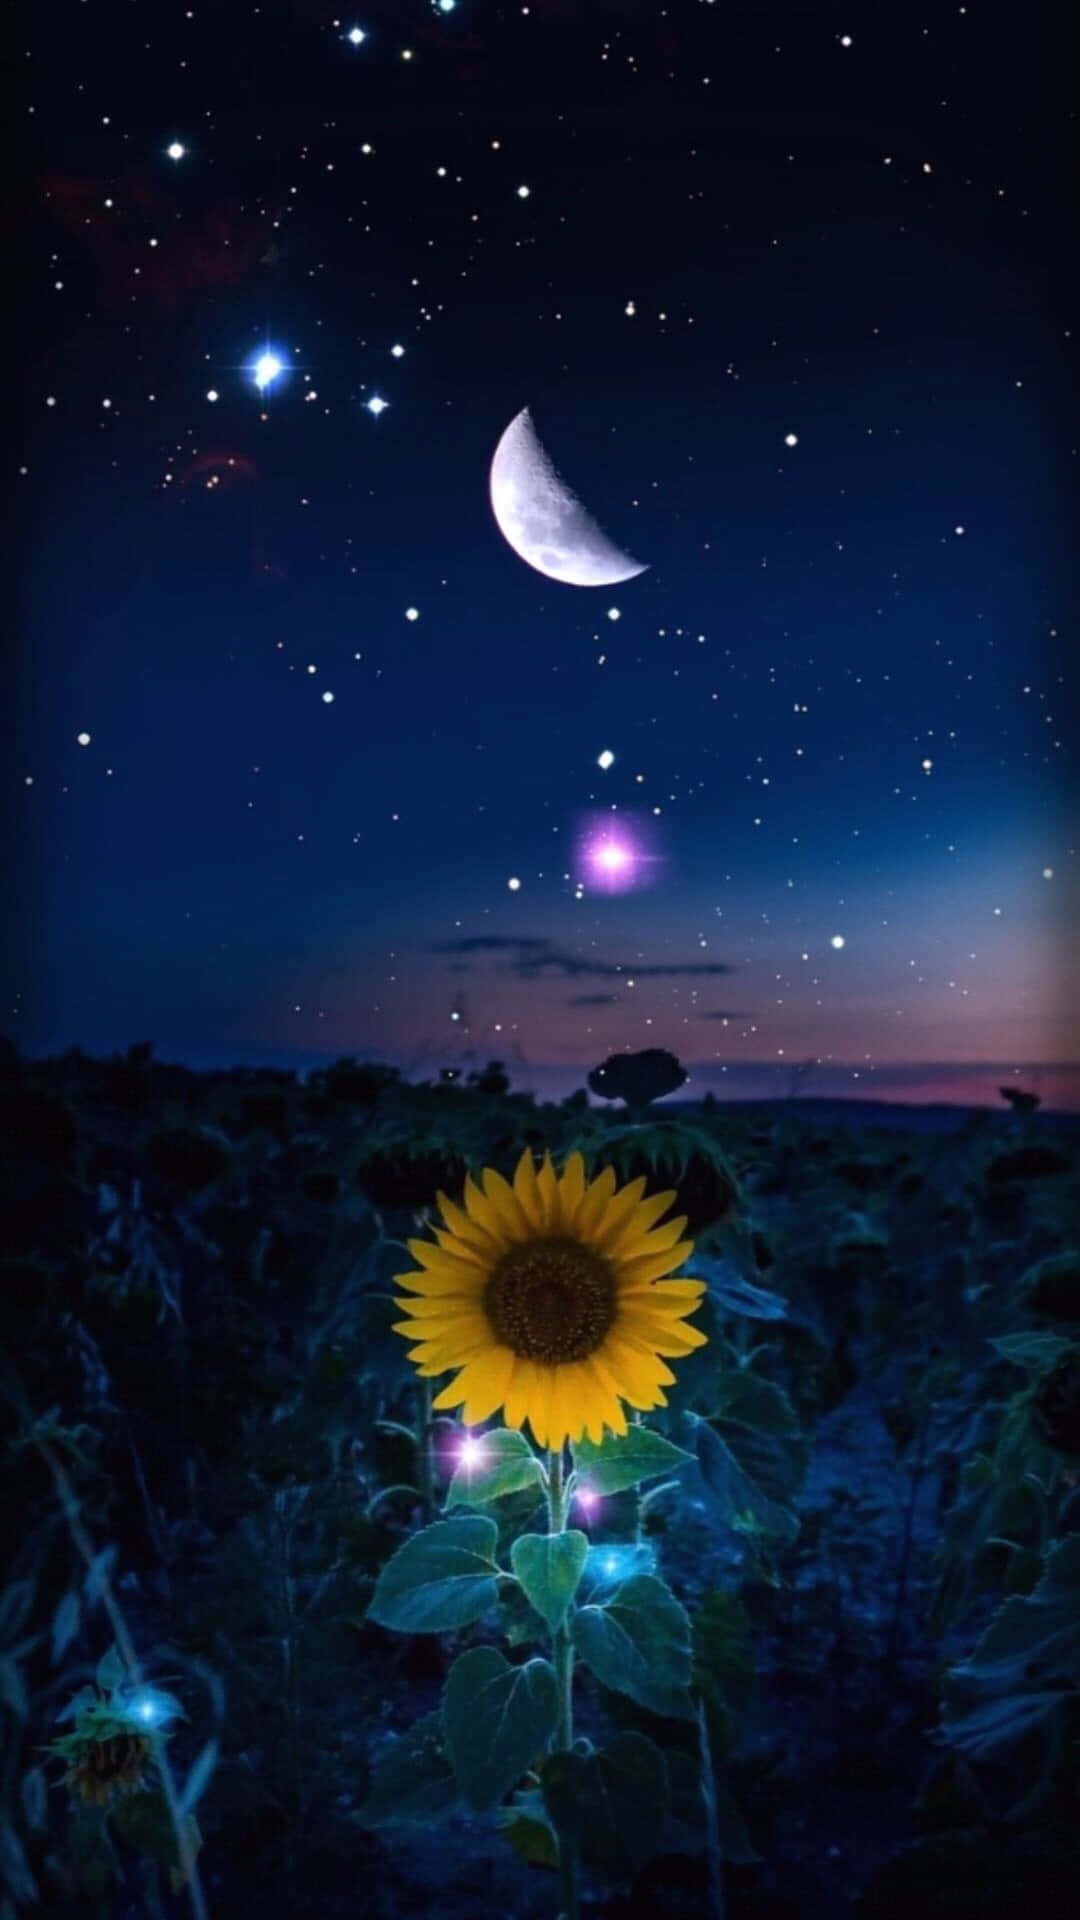 Njutav Skönheten Hos En Solros I Full Blom! (enjoy The Beauty Of A Sunflower In Full Bloom!) Wallpaper